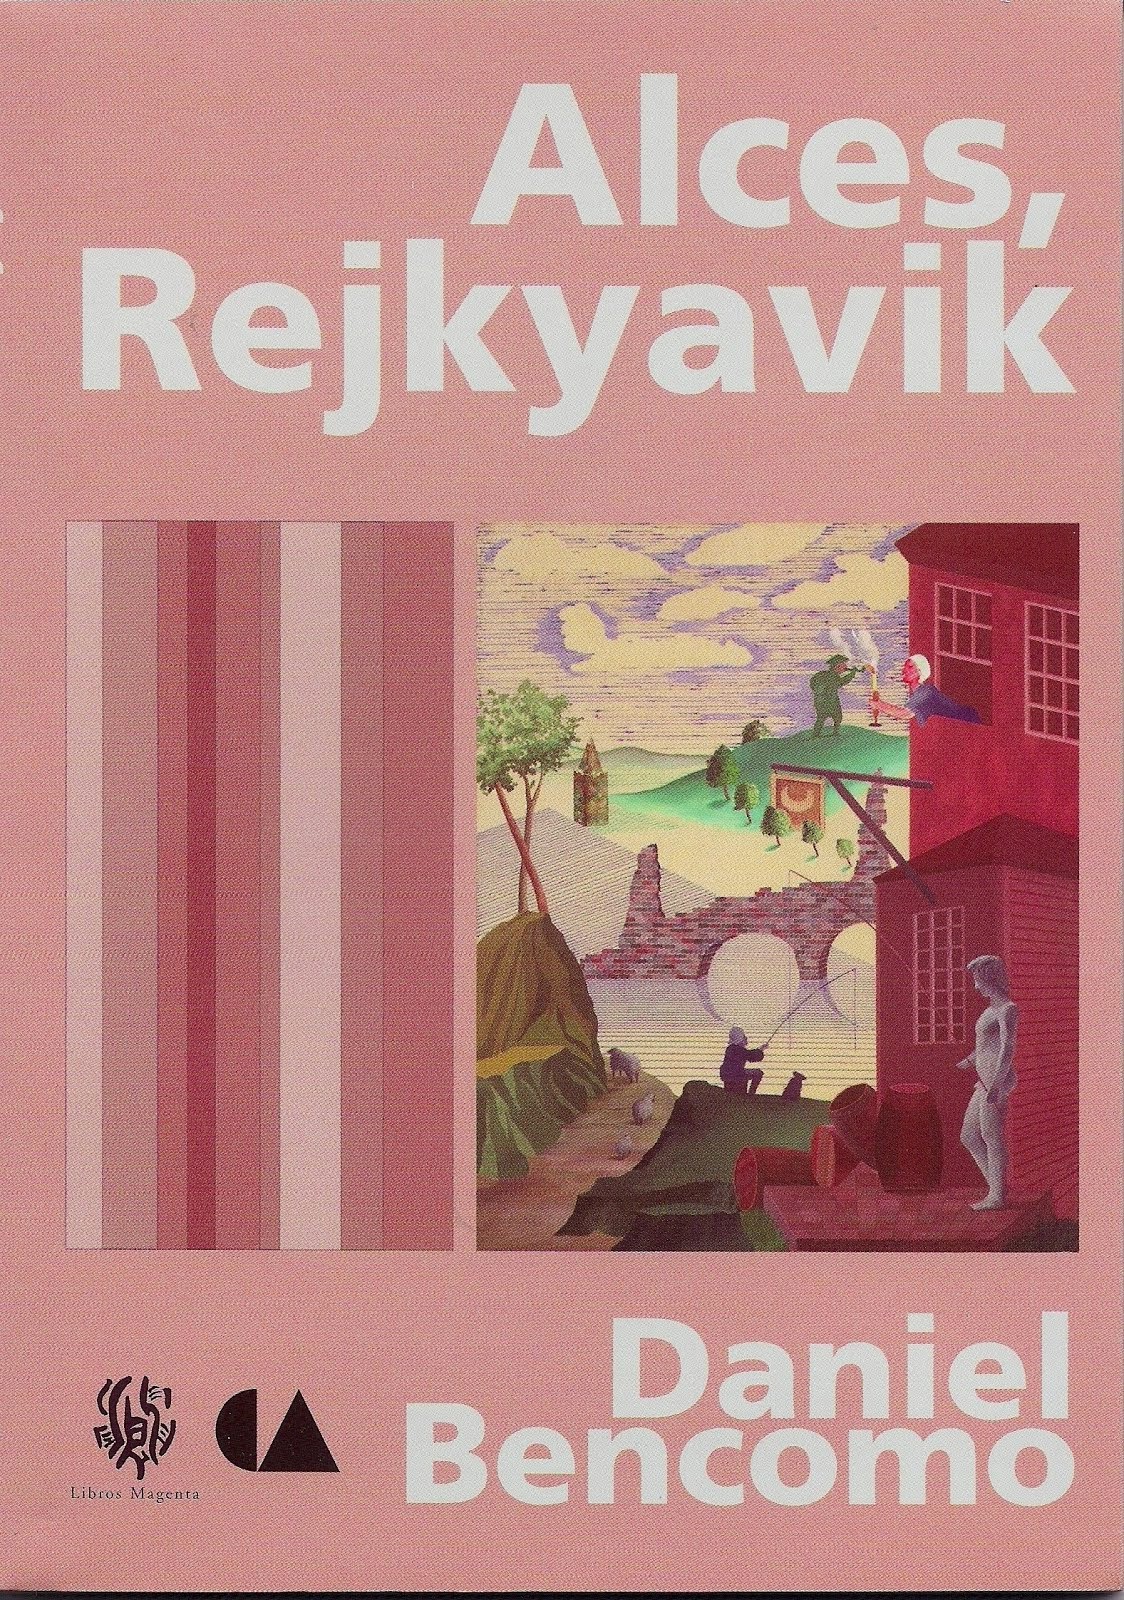 Alces, Rejkyavik